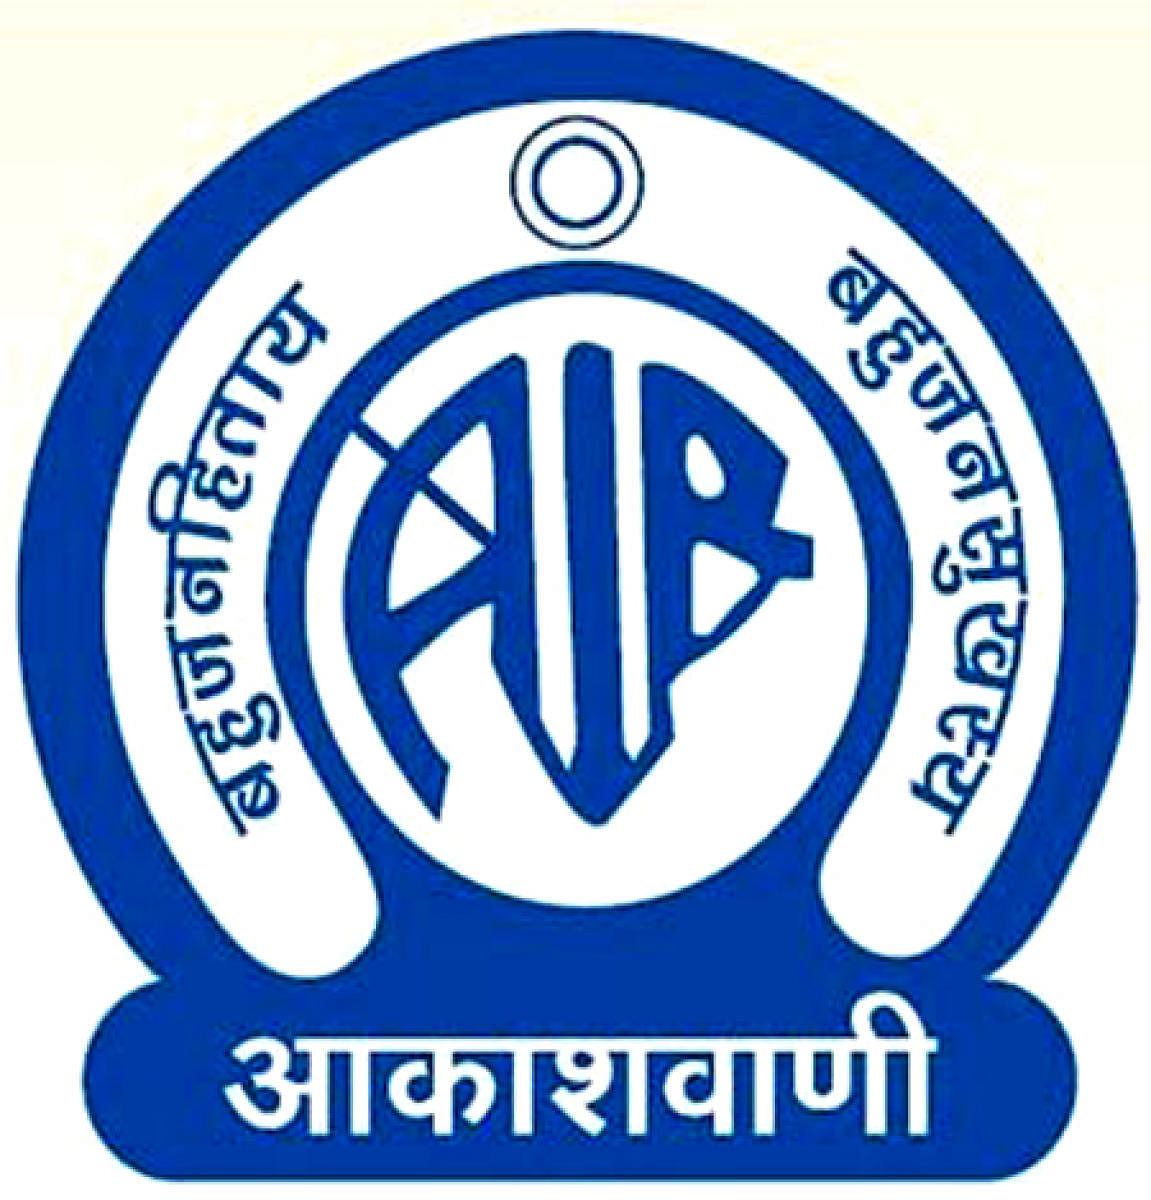 All India Radio logo. (Wikimedia Commons)